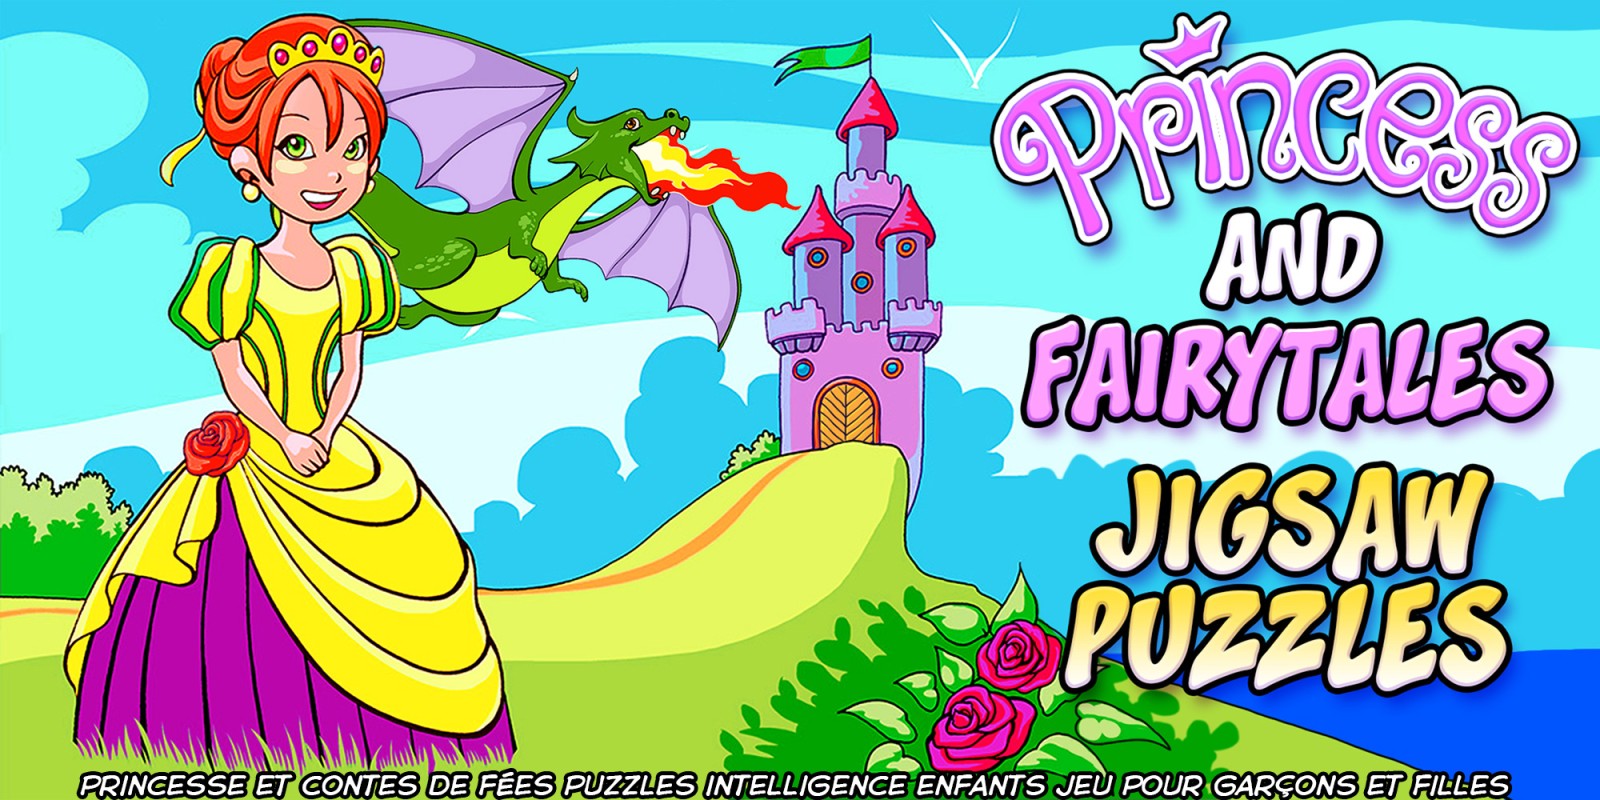 Princess and Fairytales Jigsaw Puzzles - princesse et contes de fées puzzles intelligence enfants jeu pour garçons et filles